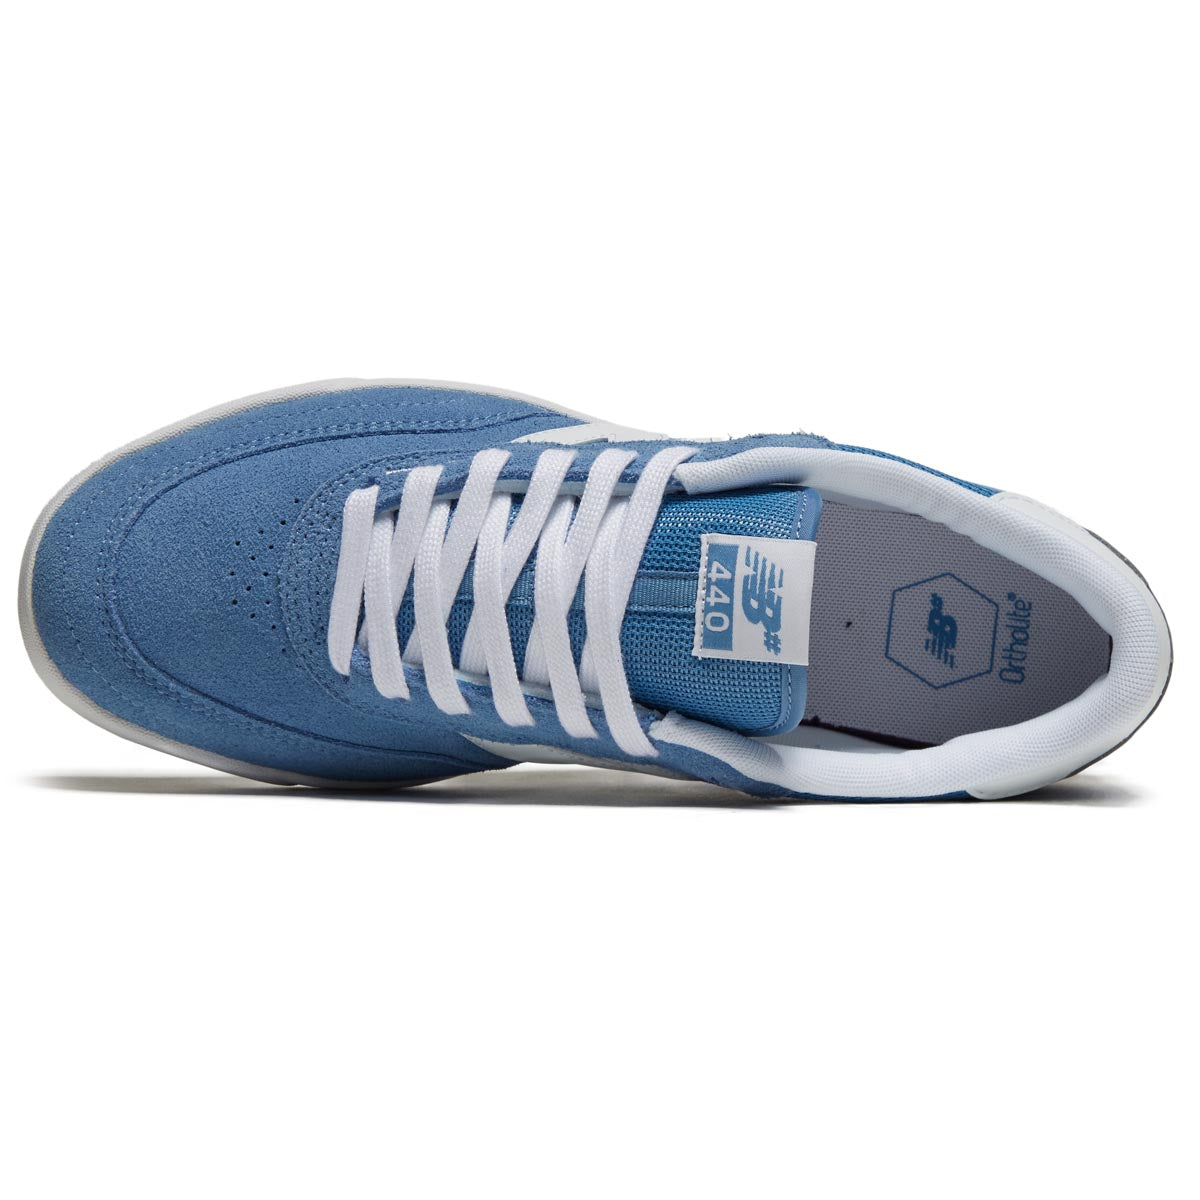 New Balance 440 V2 Shoes - Blue image 3